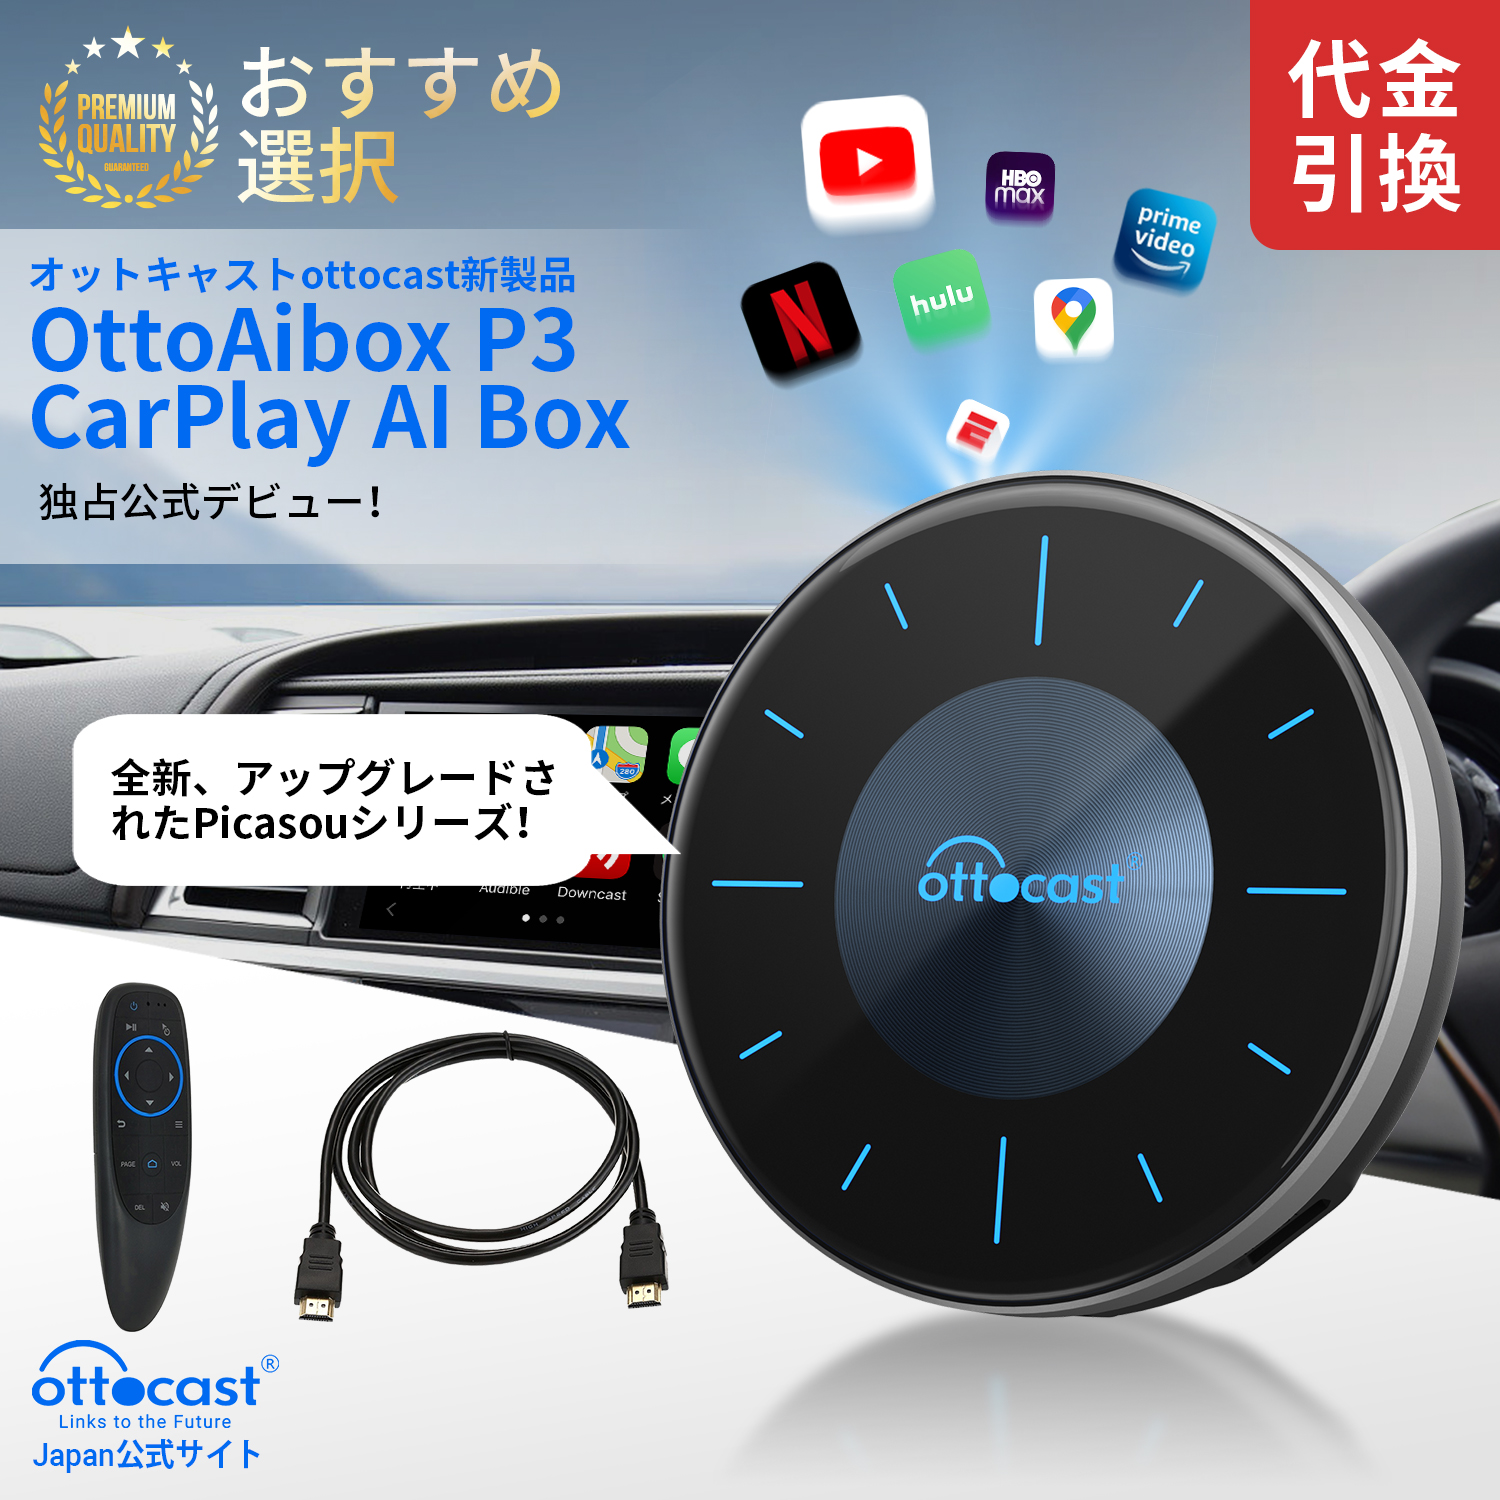 OTTOCAST 最新モデルオットキャスト ピカソウ2 carplayリモコン付 - カーナビ